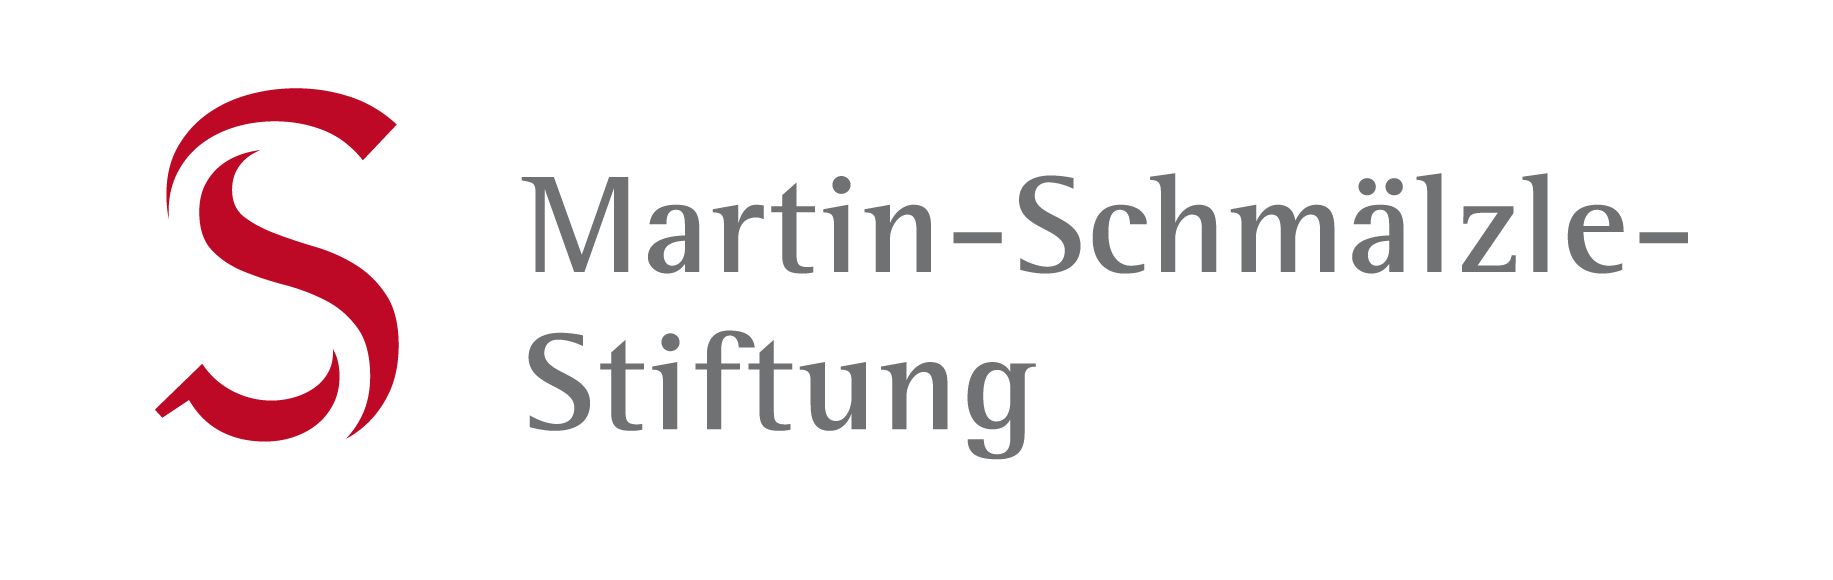 Martin-Schmlze-Stiftung